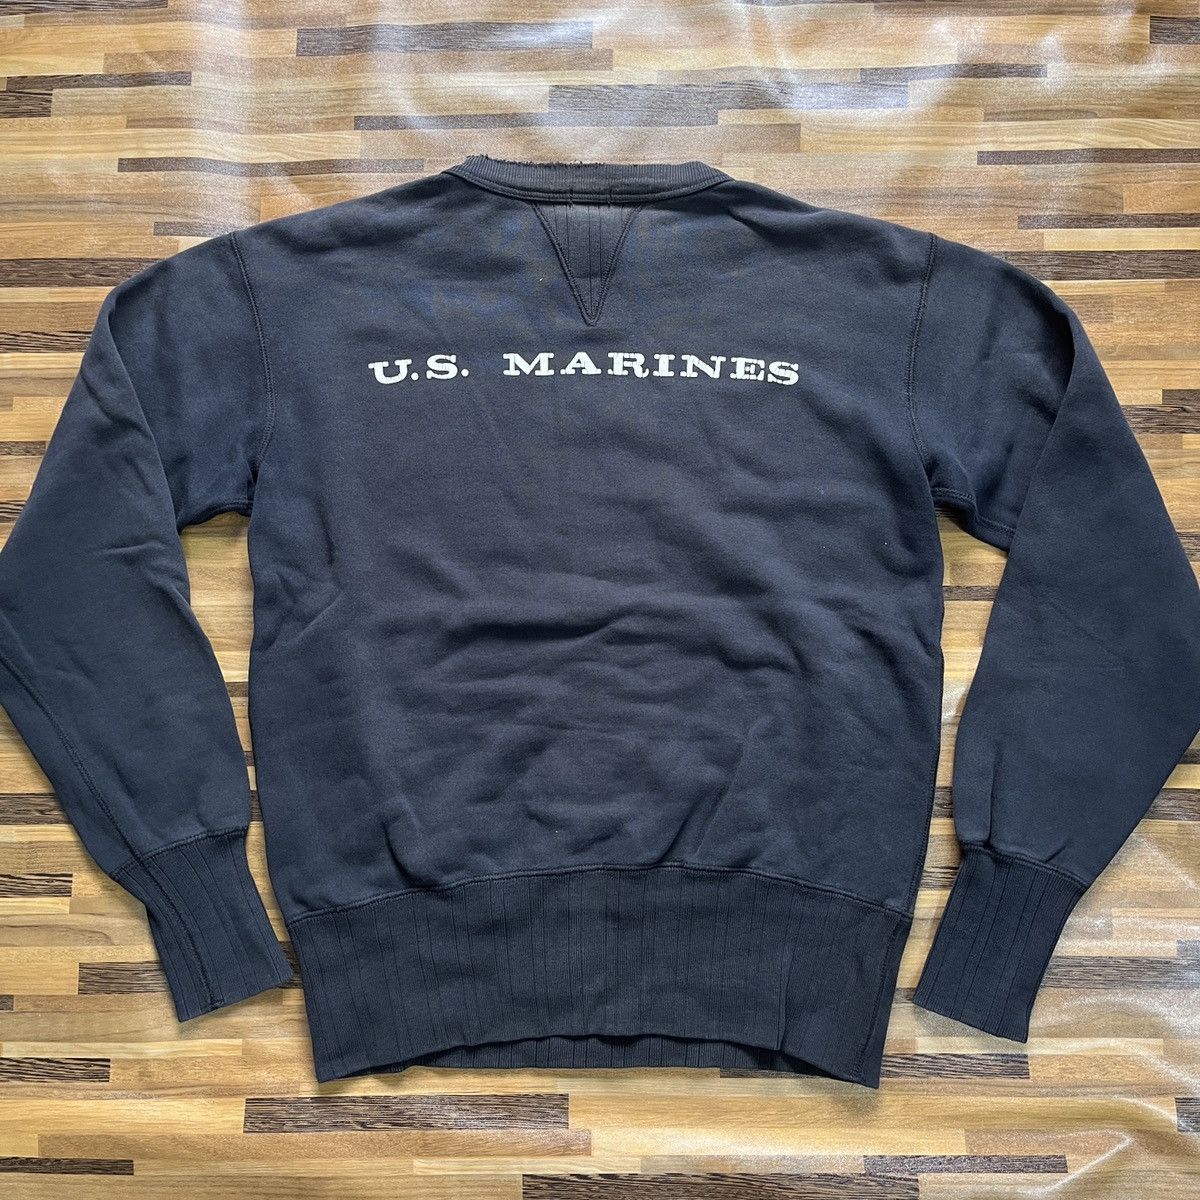 Vintage 1970s USMC Sweater US Marines Sportswear - 13